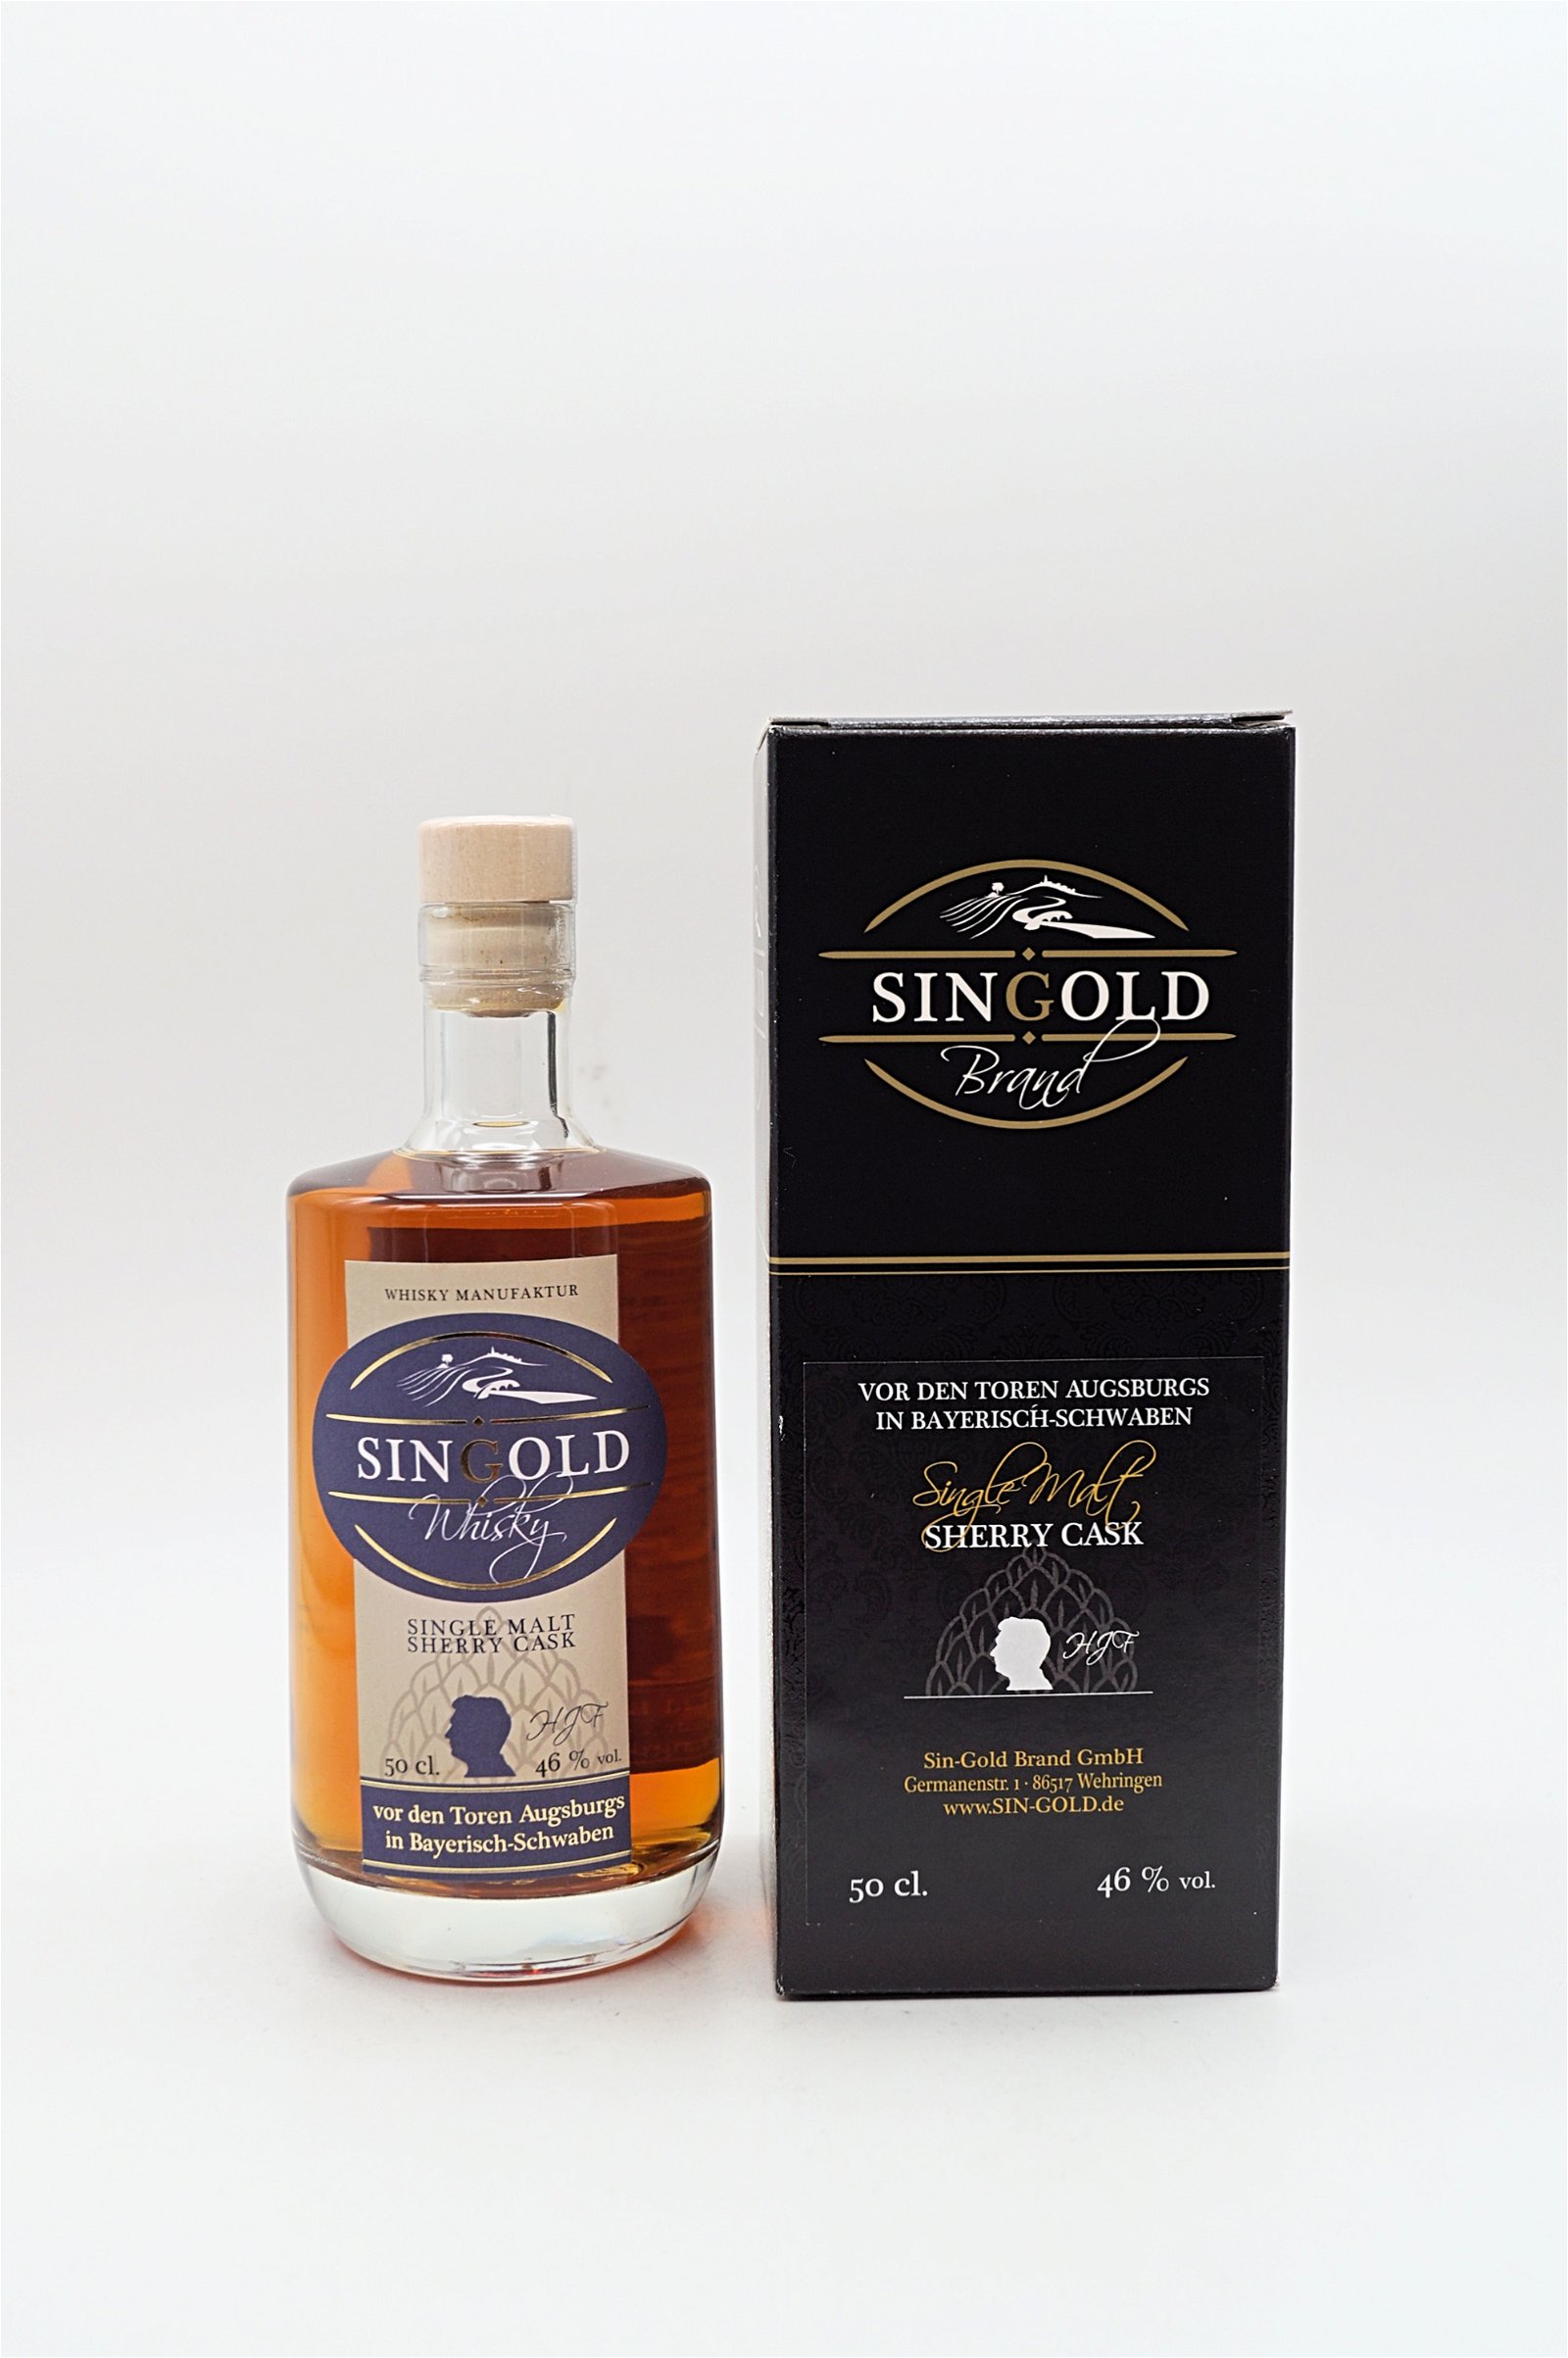 SinGold Single Malt Sherry Cask Whisky